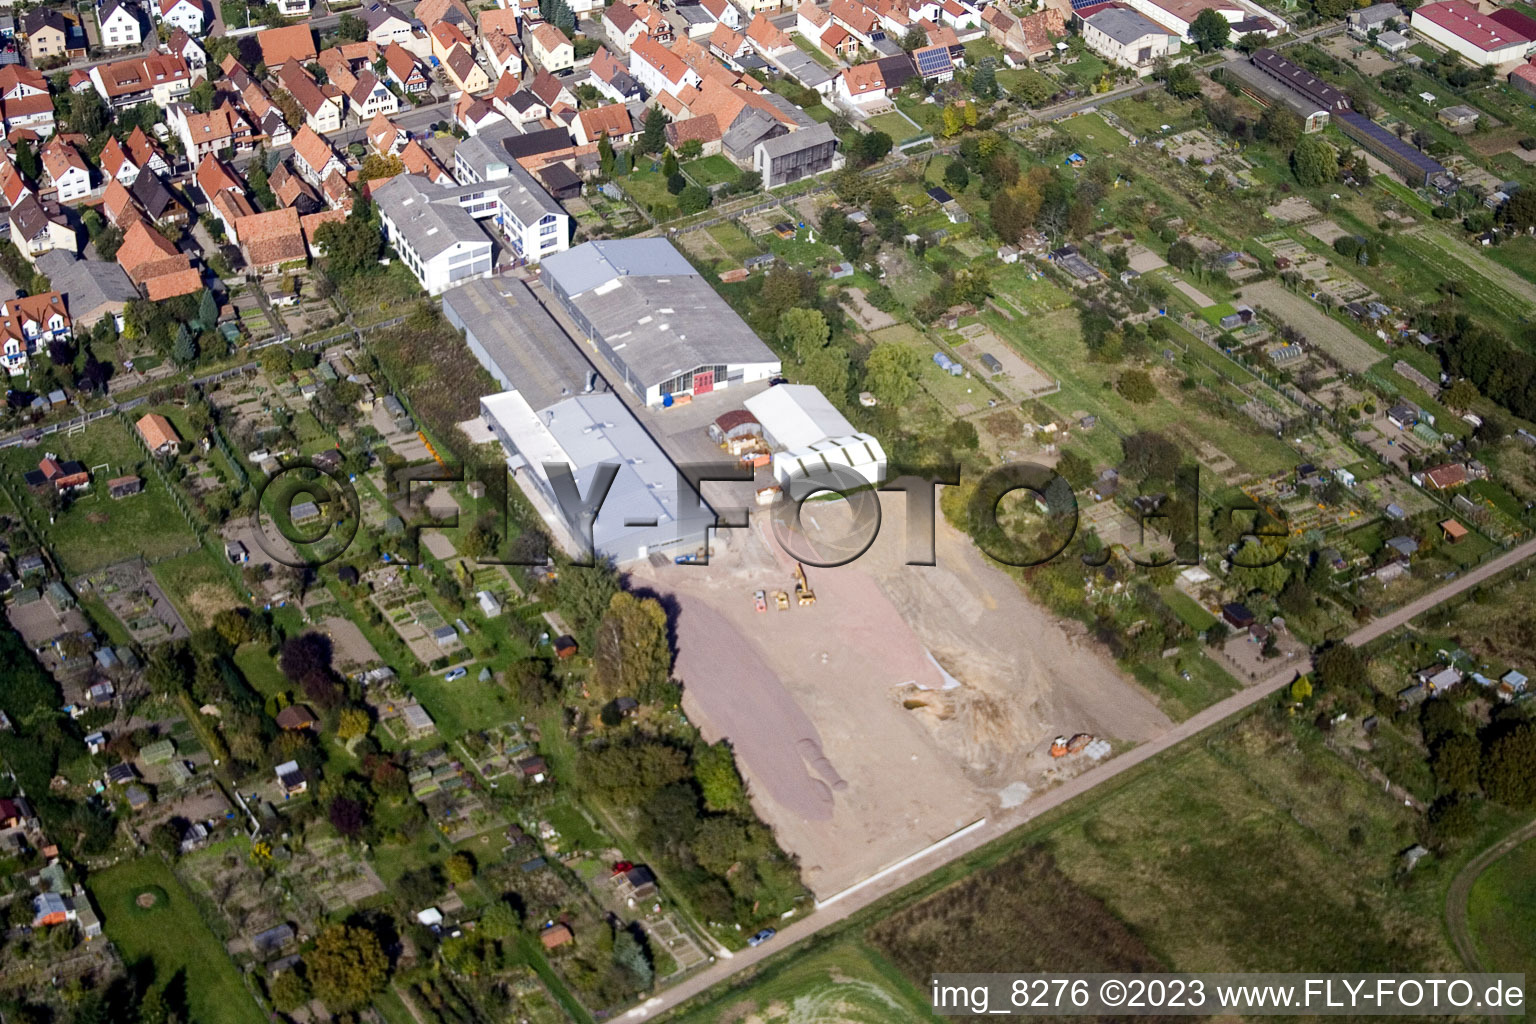 Vue aérienne de Nouveau bâtiment DBK, dans les jardins d'herbes aromatiques à Kandel dans le département Rhénanie-Palatinat, Allemagne